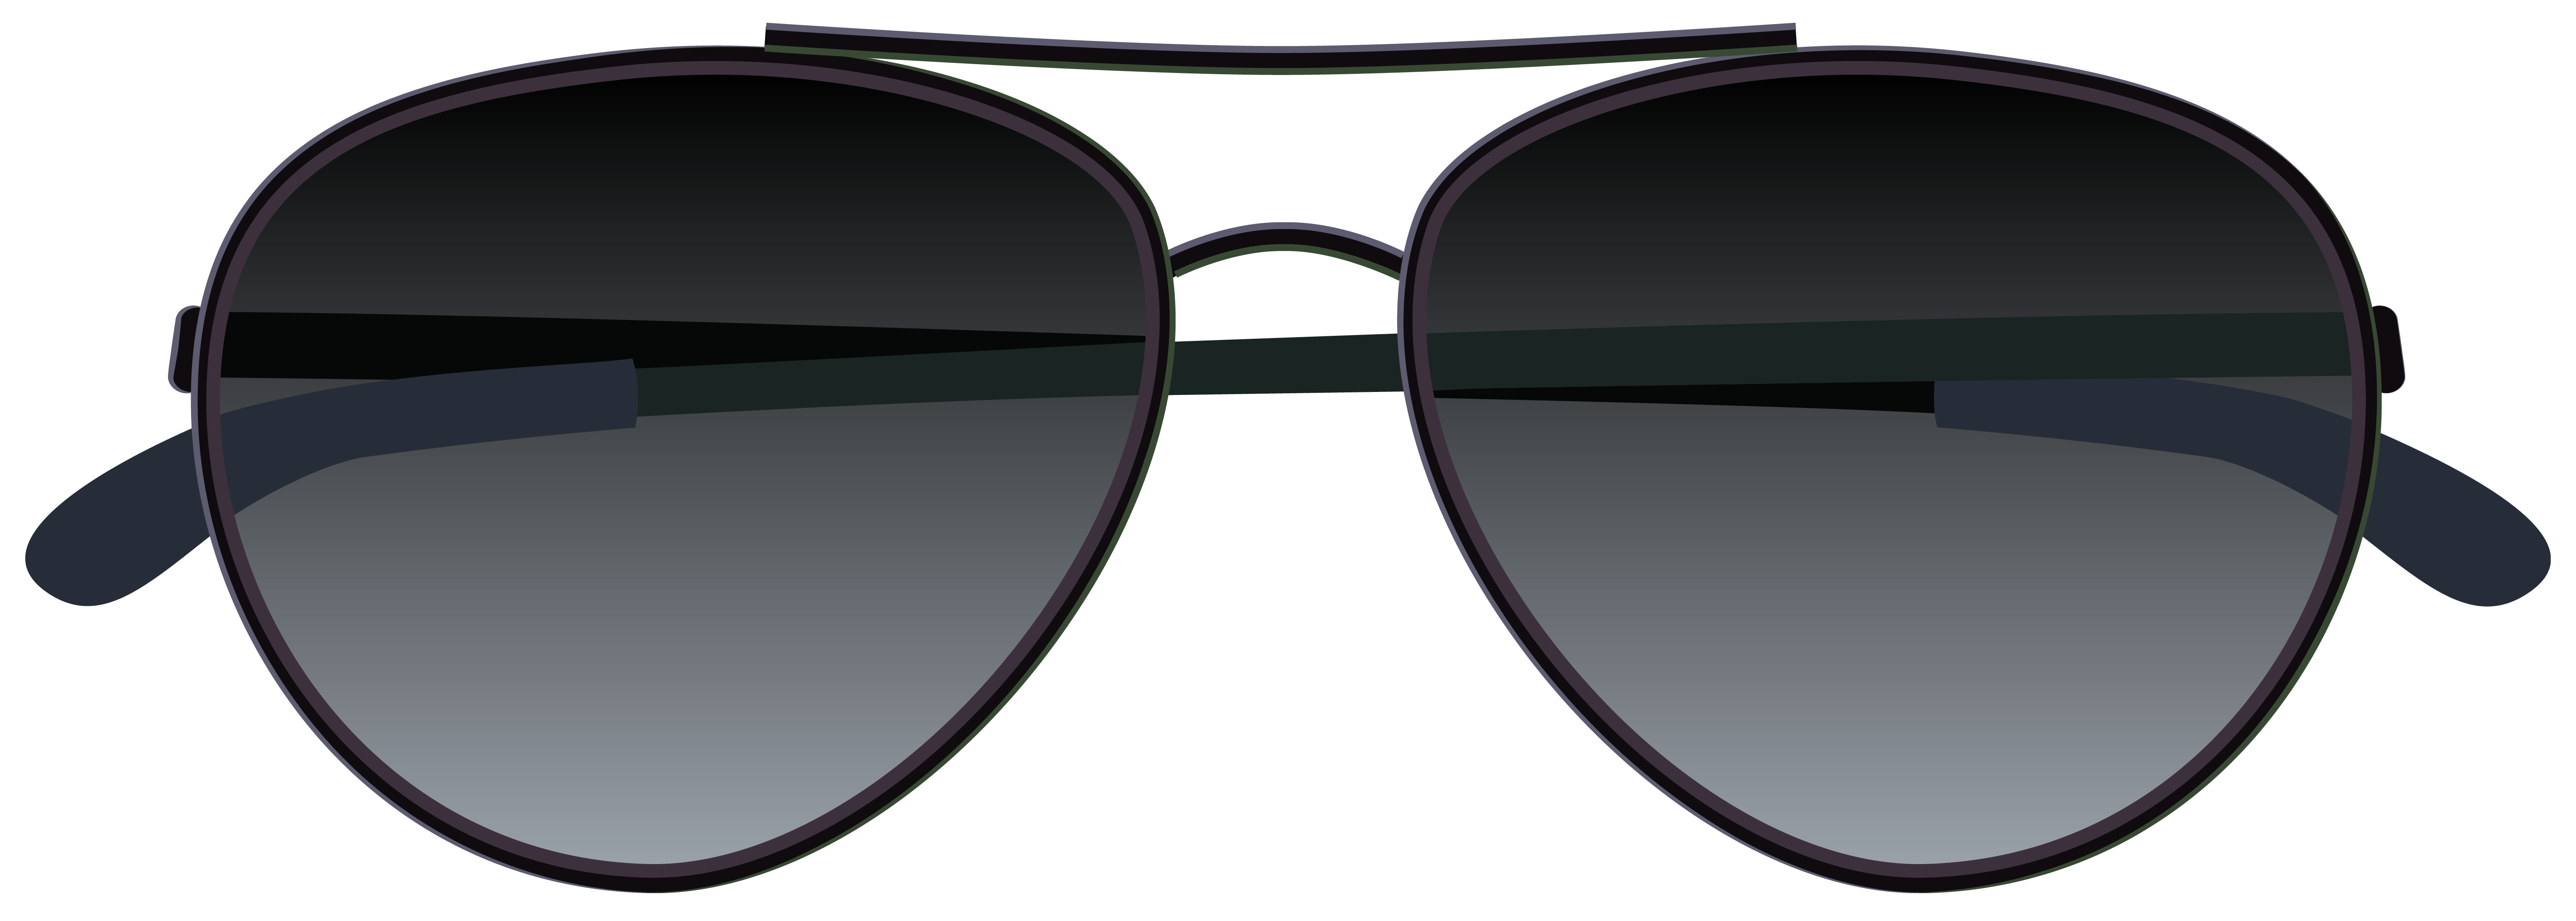 Sunglasses clipart png - ClipartFox